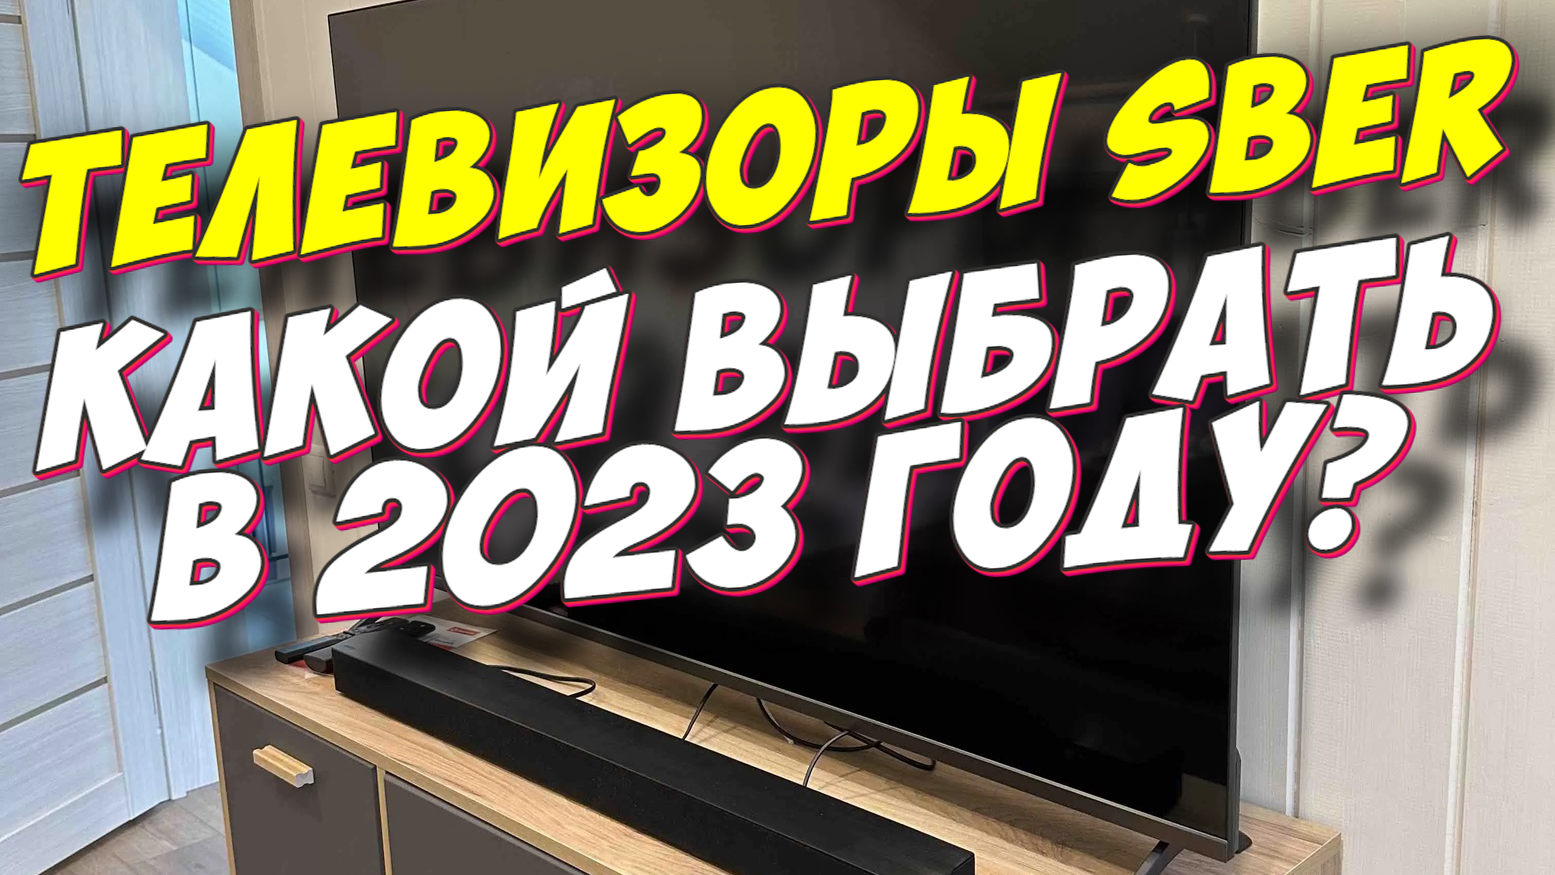 Телевизор sdx 55uq5230t. Sdx-55uq5230t. Телевизор Сбер sdx-32h2122b. Sdx-50uq5230t обзор.